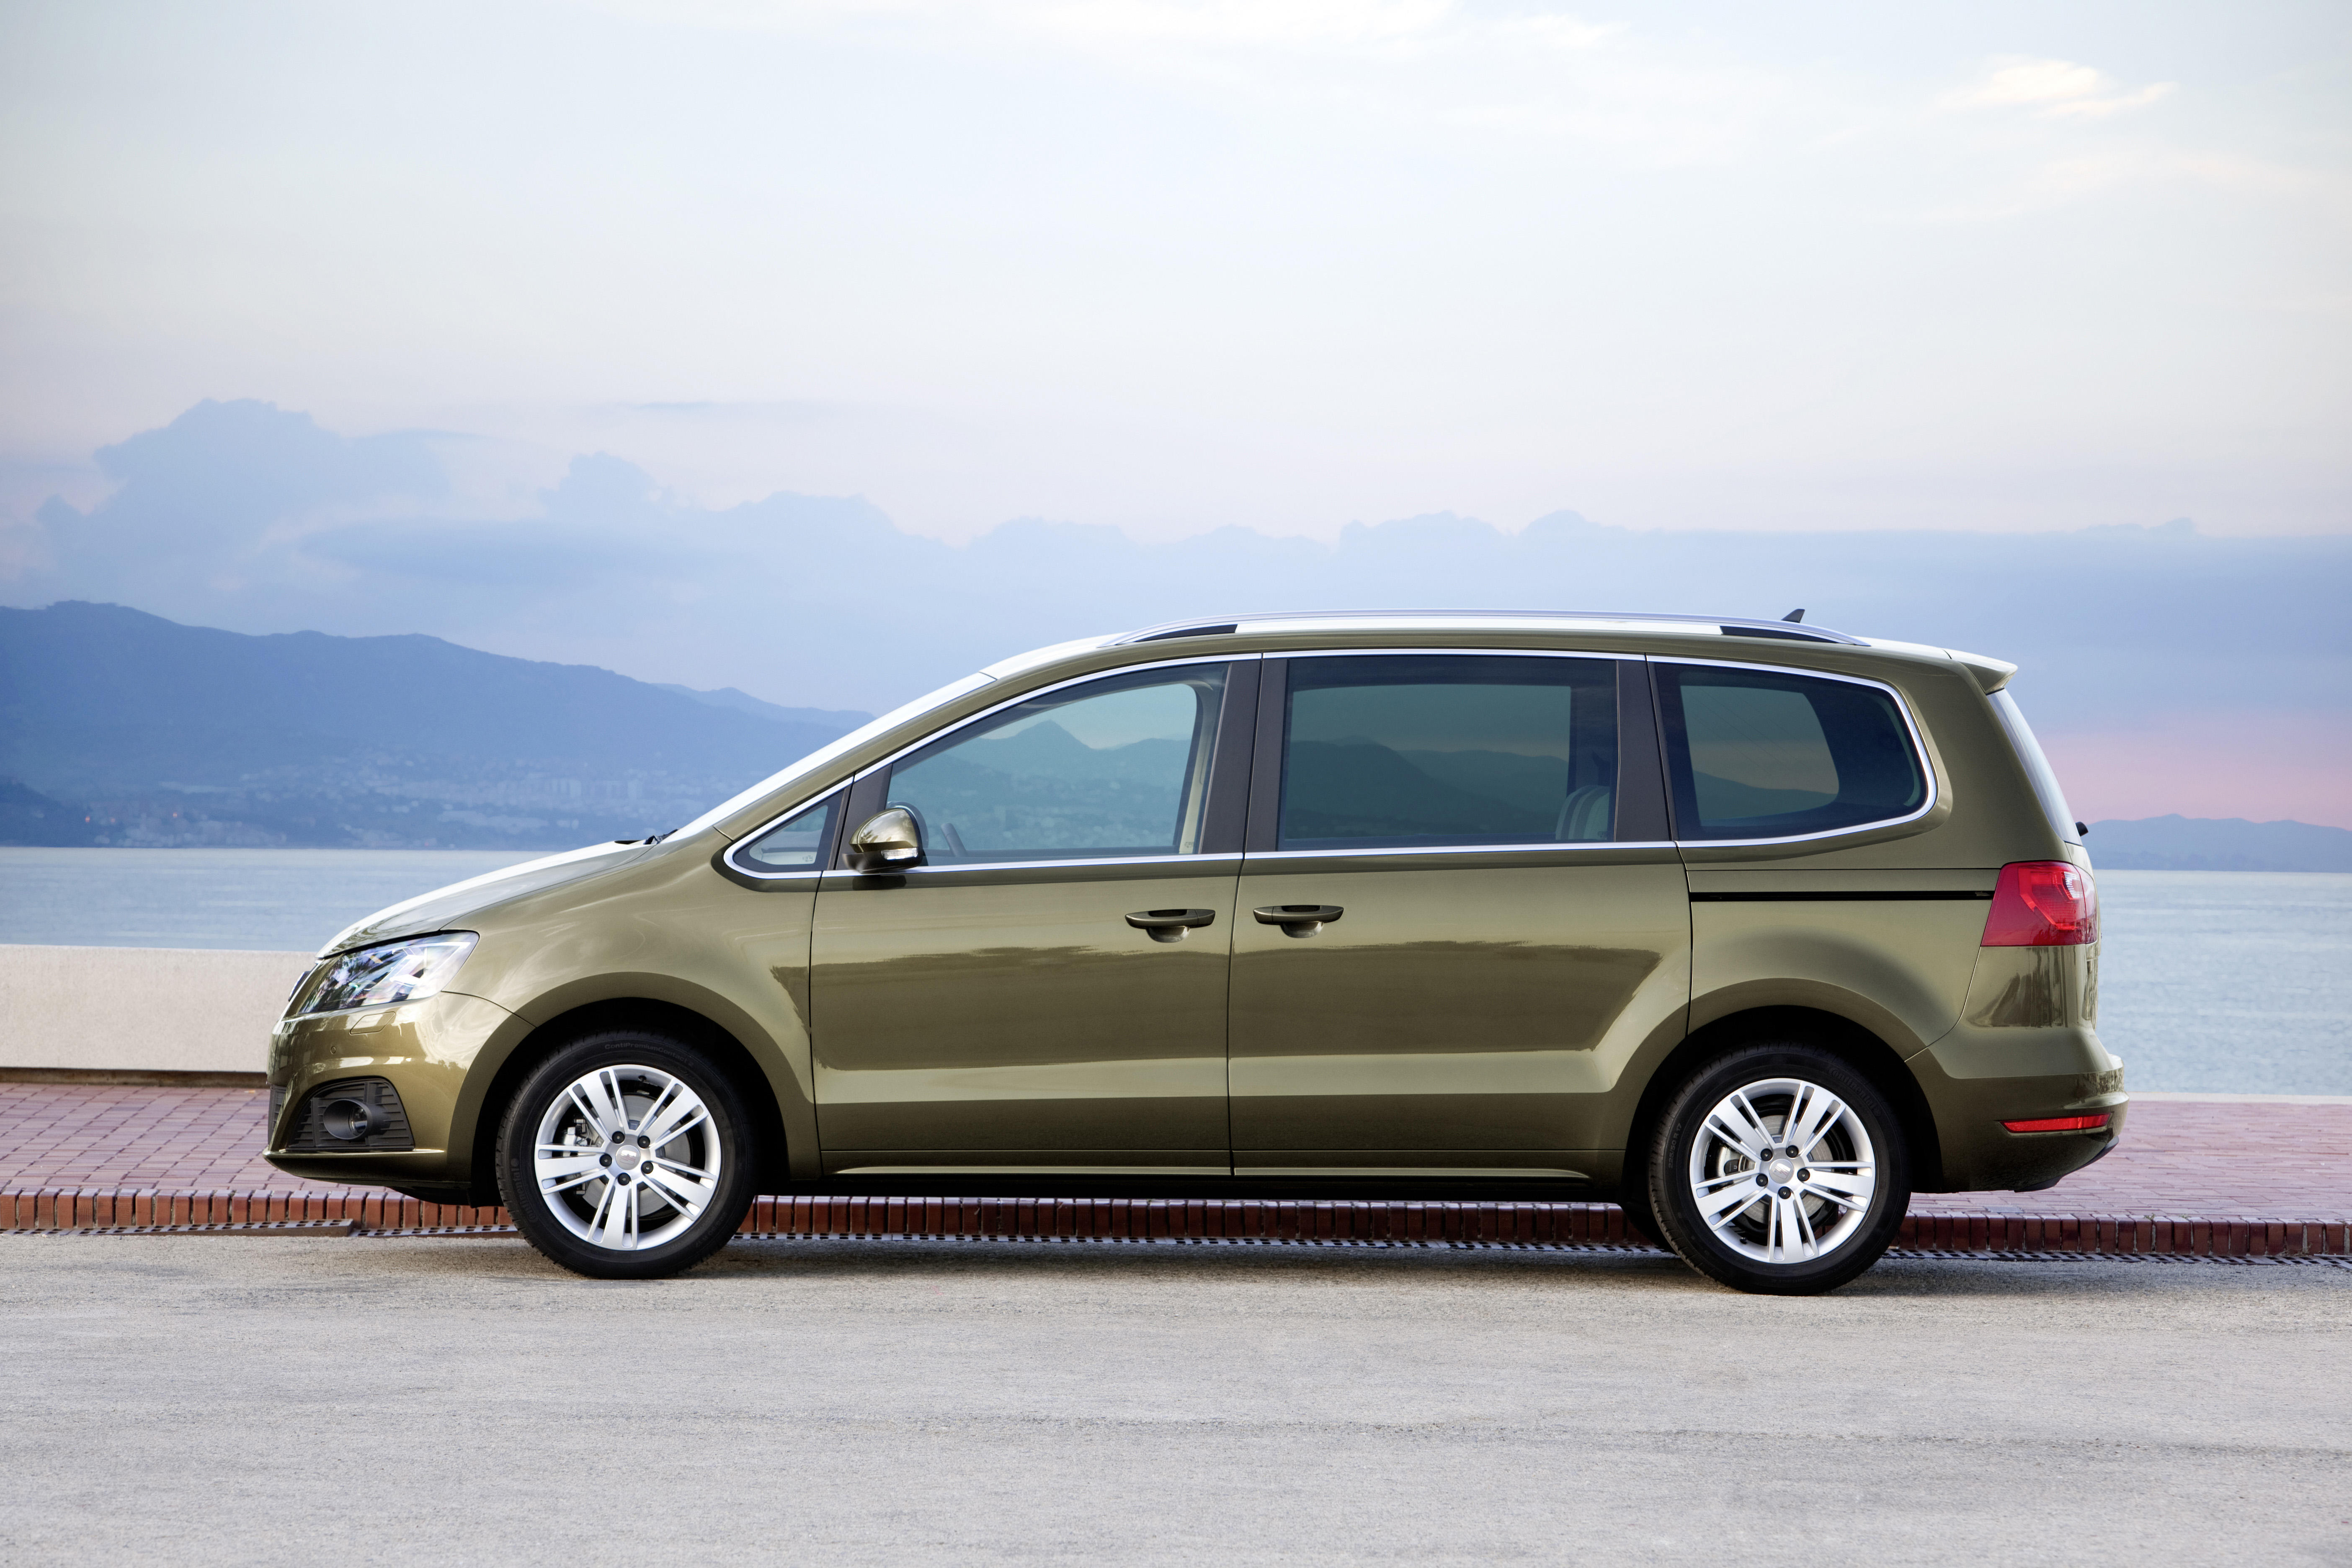 Bruderkampf: Welcher Van ist besser: Seat Alhambra oder VW Sharan? - AUTO  BILD